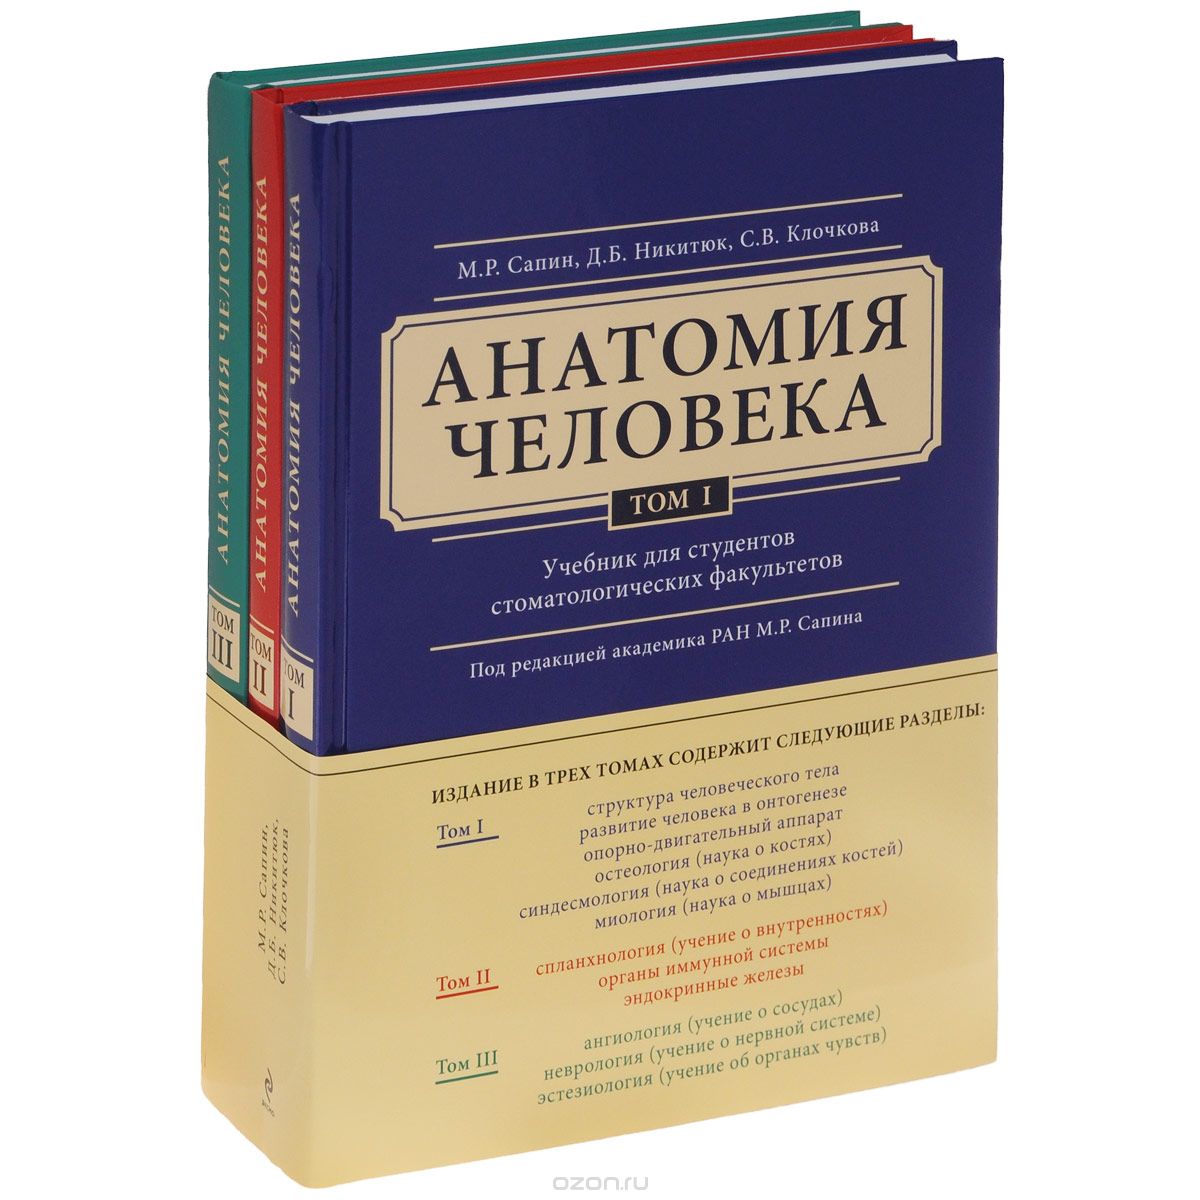 Скачать книгу "Анатомия человека. Учебник. В 3 томах (комплект из 3 книг), М. Р. Сапин, Д. Б. Никитюк, С. В. Клочкова"